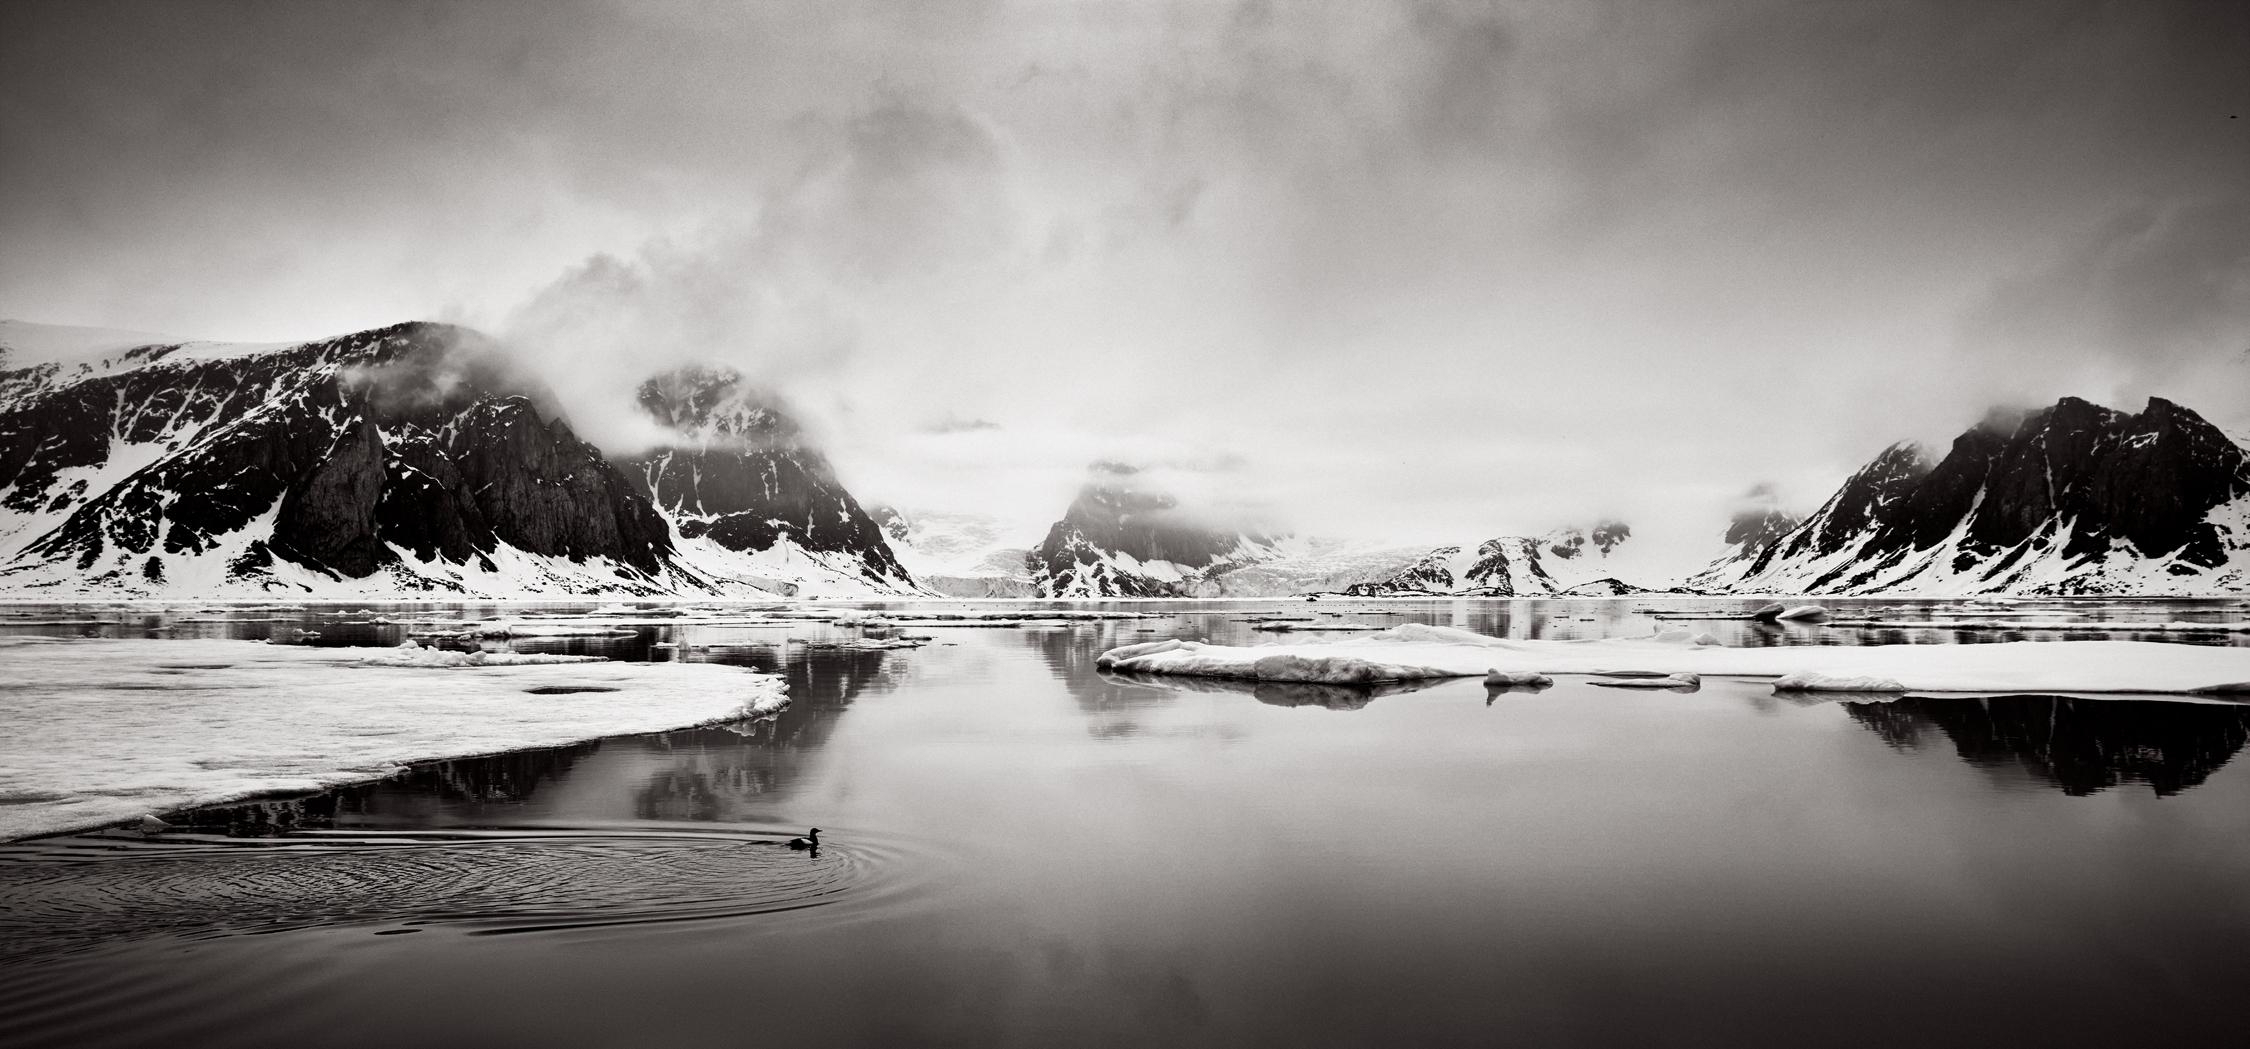 Black and White Photograph Drew Doggett - Paysage arctique avec oiseaux Whiting, Photographie en noir et blanc